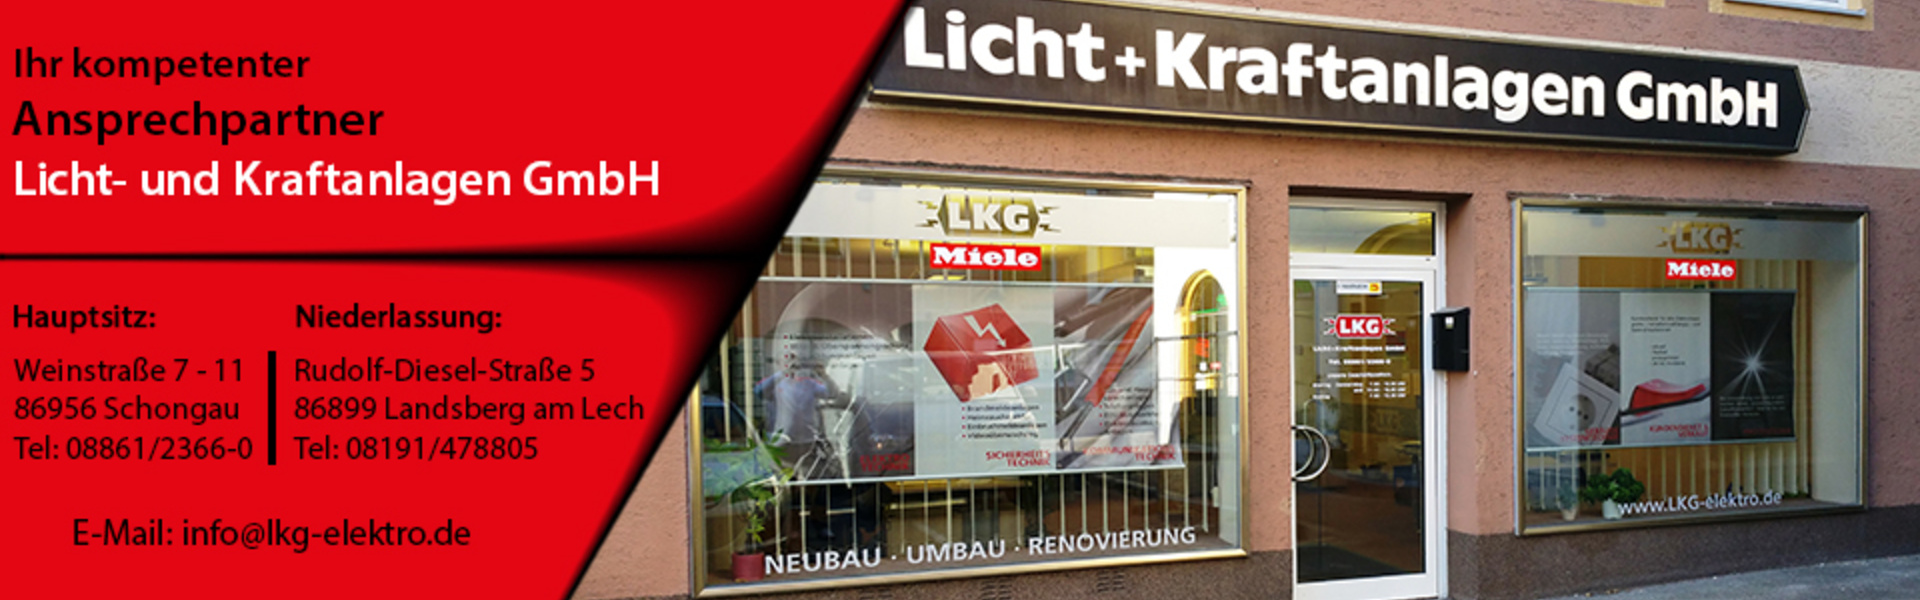 Licht- und Kraftanlagen GmbH in Schongau